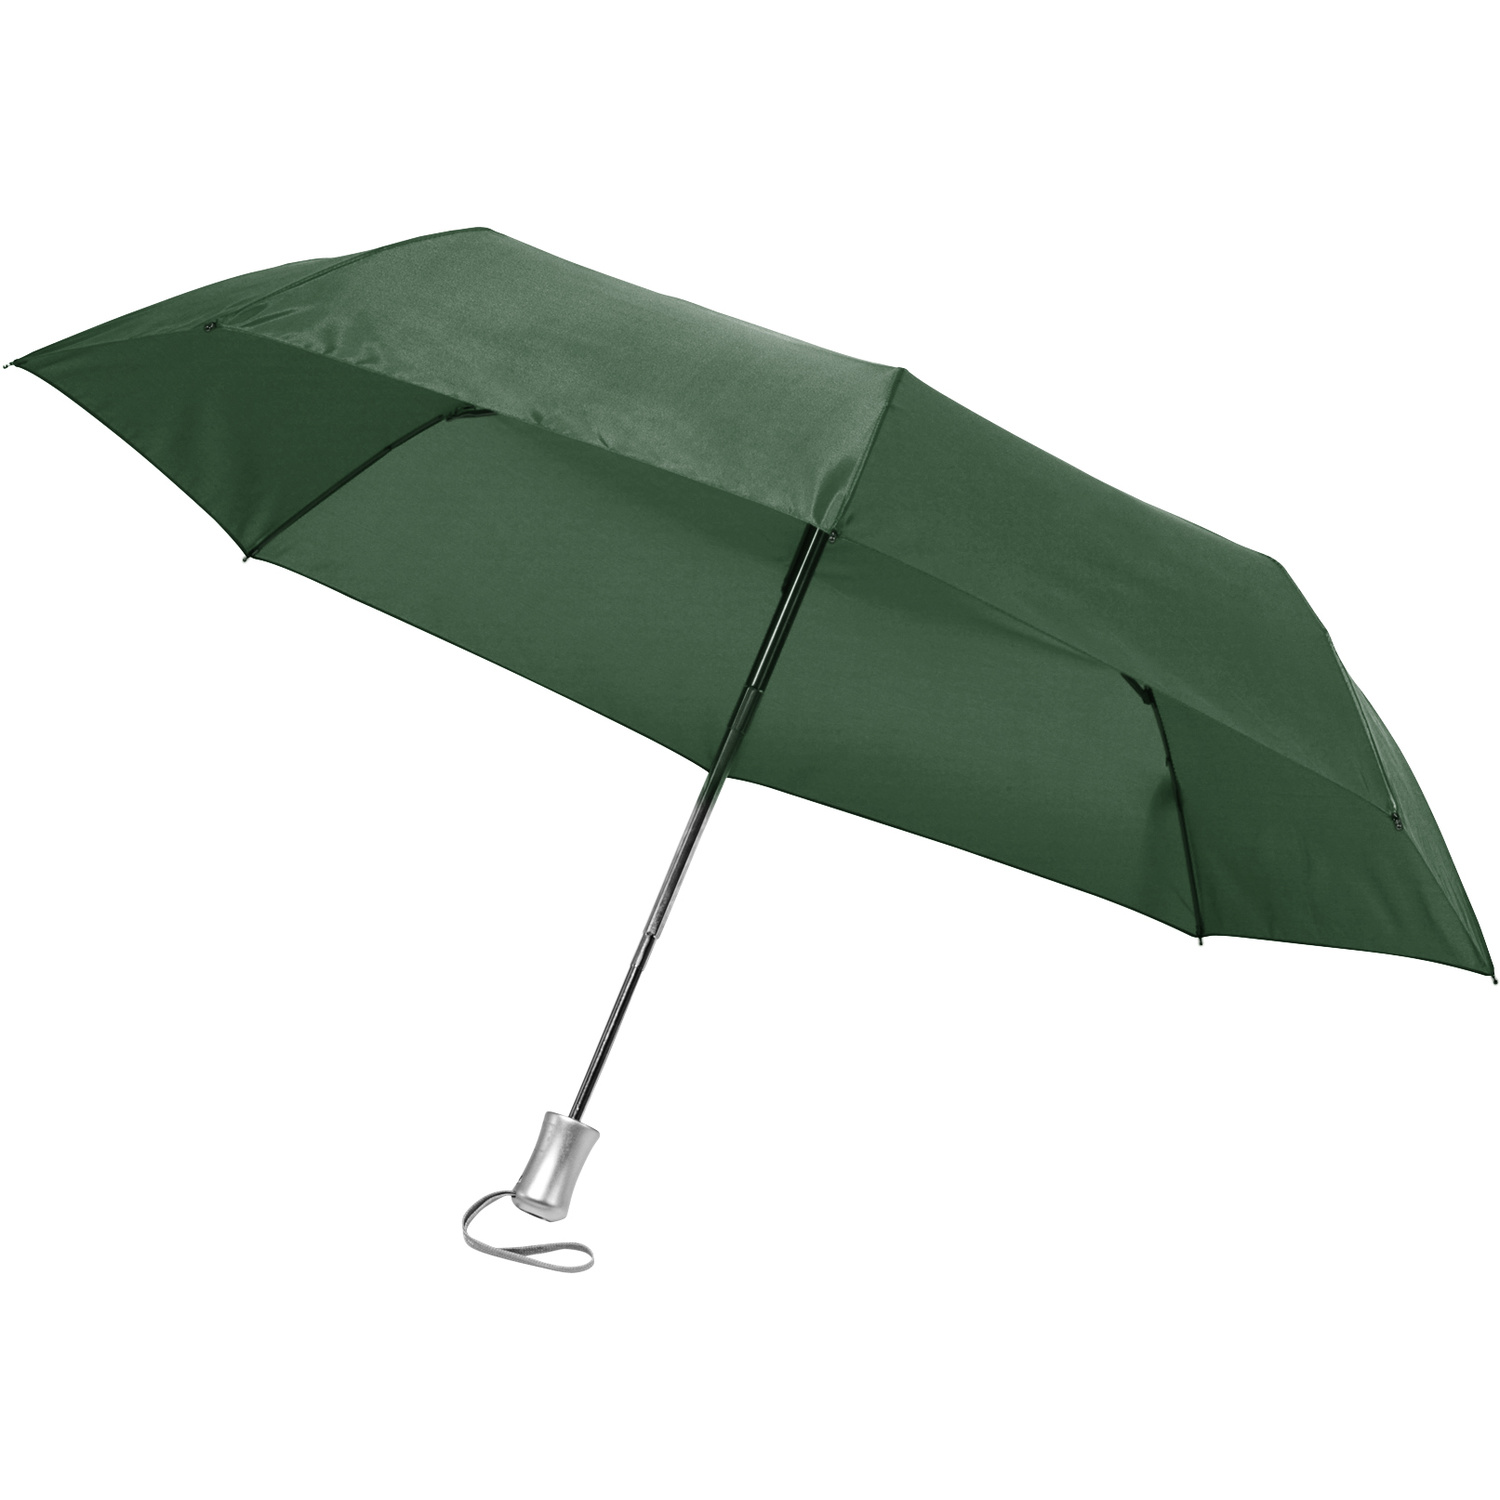 005247 004999999 3d045 ins pro01 fal - Foldable automatic umbrella